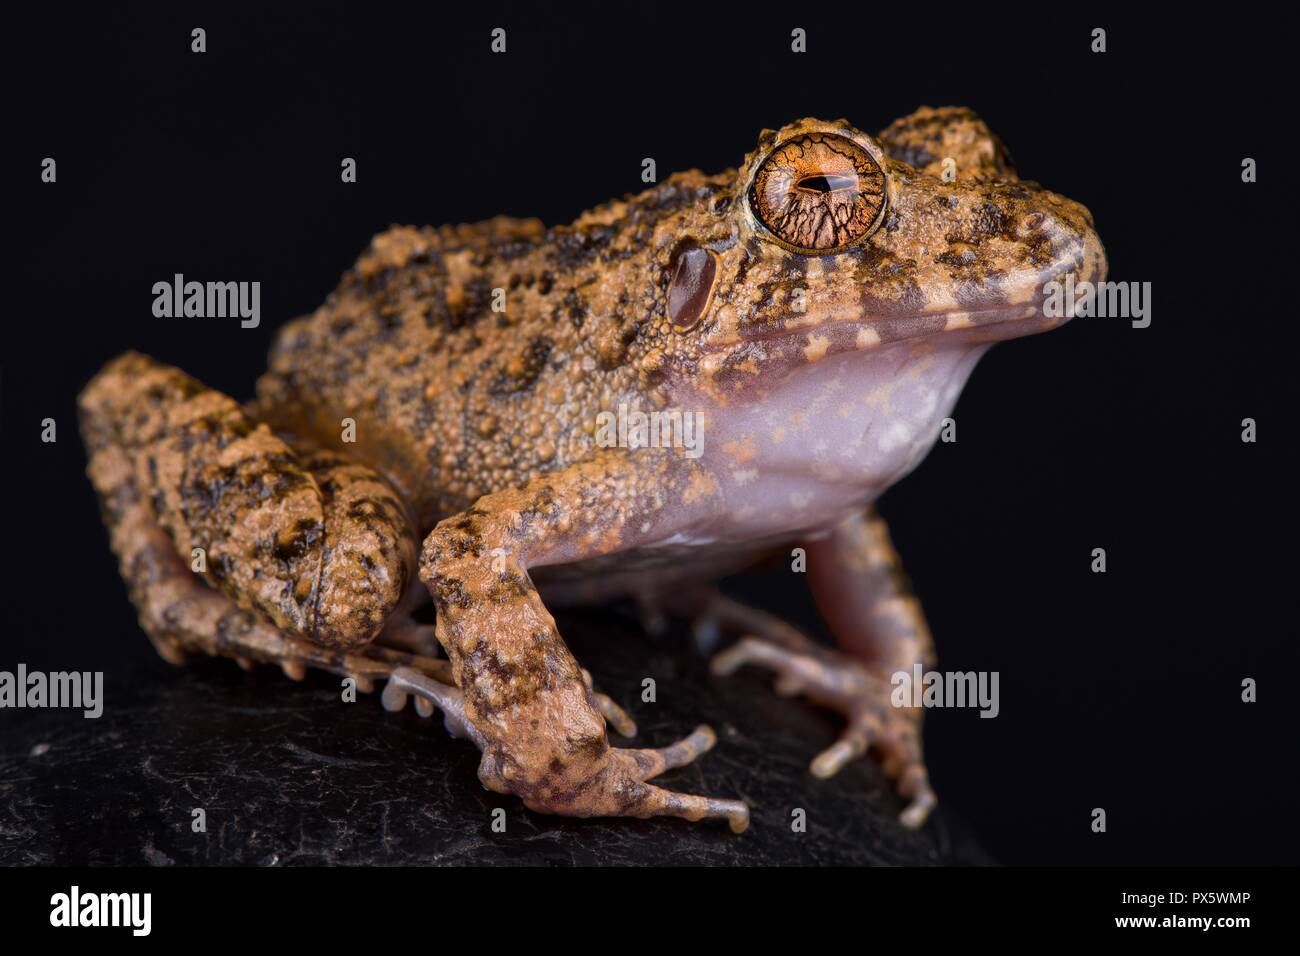 Big headed rain frog (Ischnocnema quixensis) Stock Photo